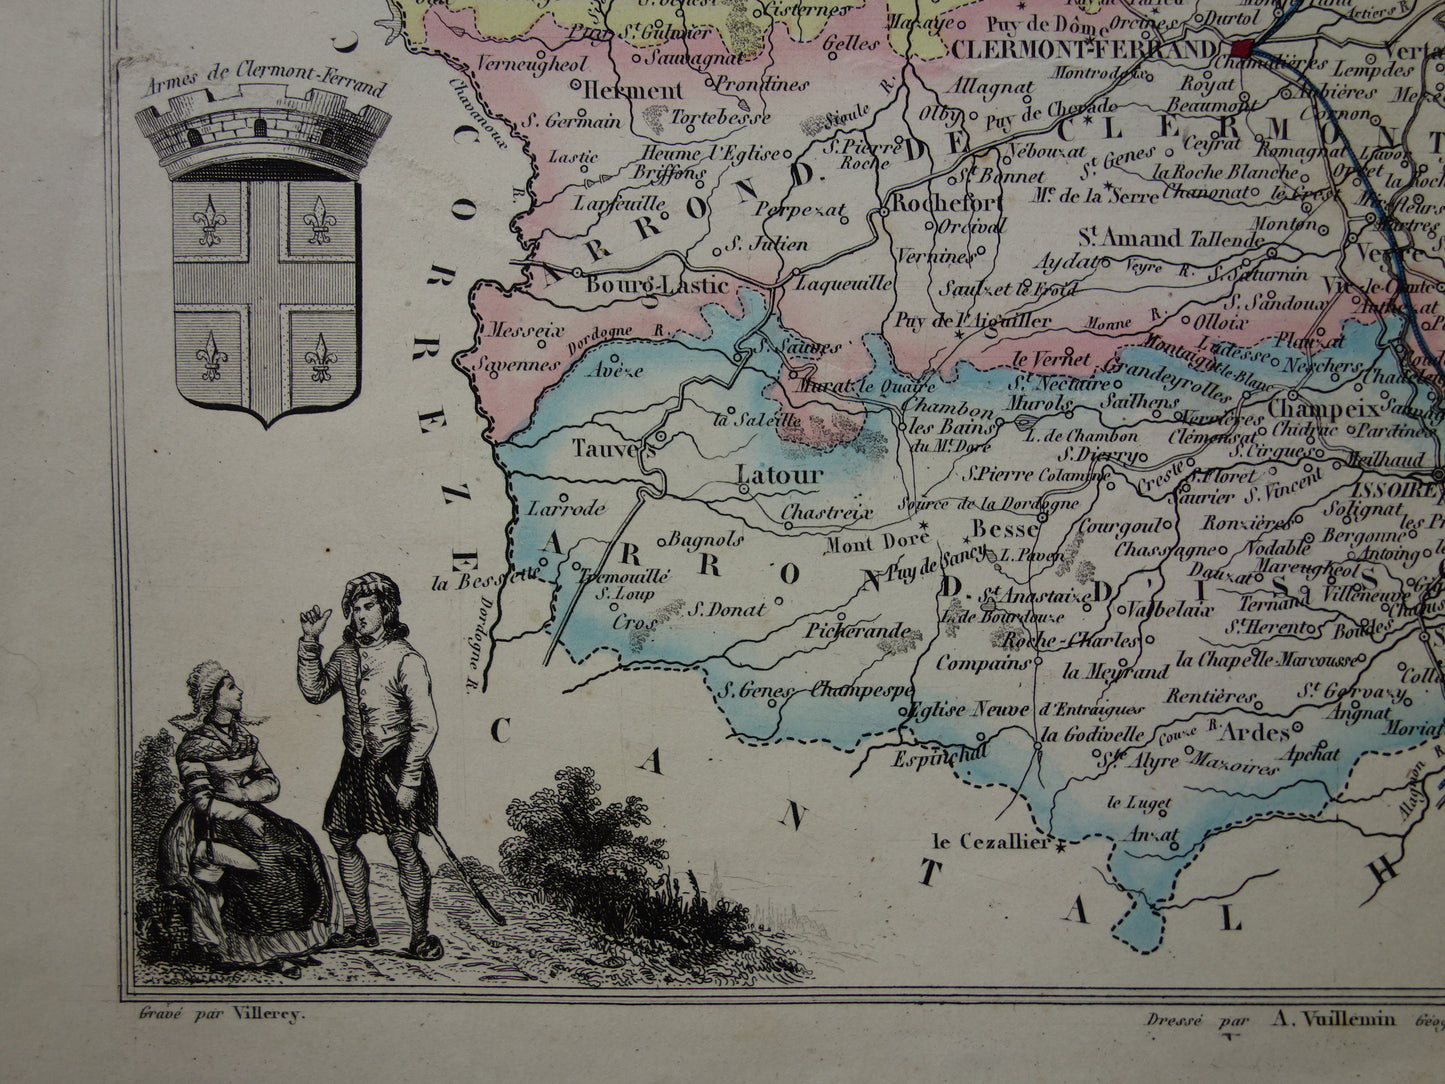 Oude kaart van Puy-de-Dôme departement in Frankrijk uit 1856 originele oude handgekleurde landkaart Clermont-Ferrant Puy de Dome